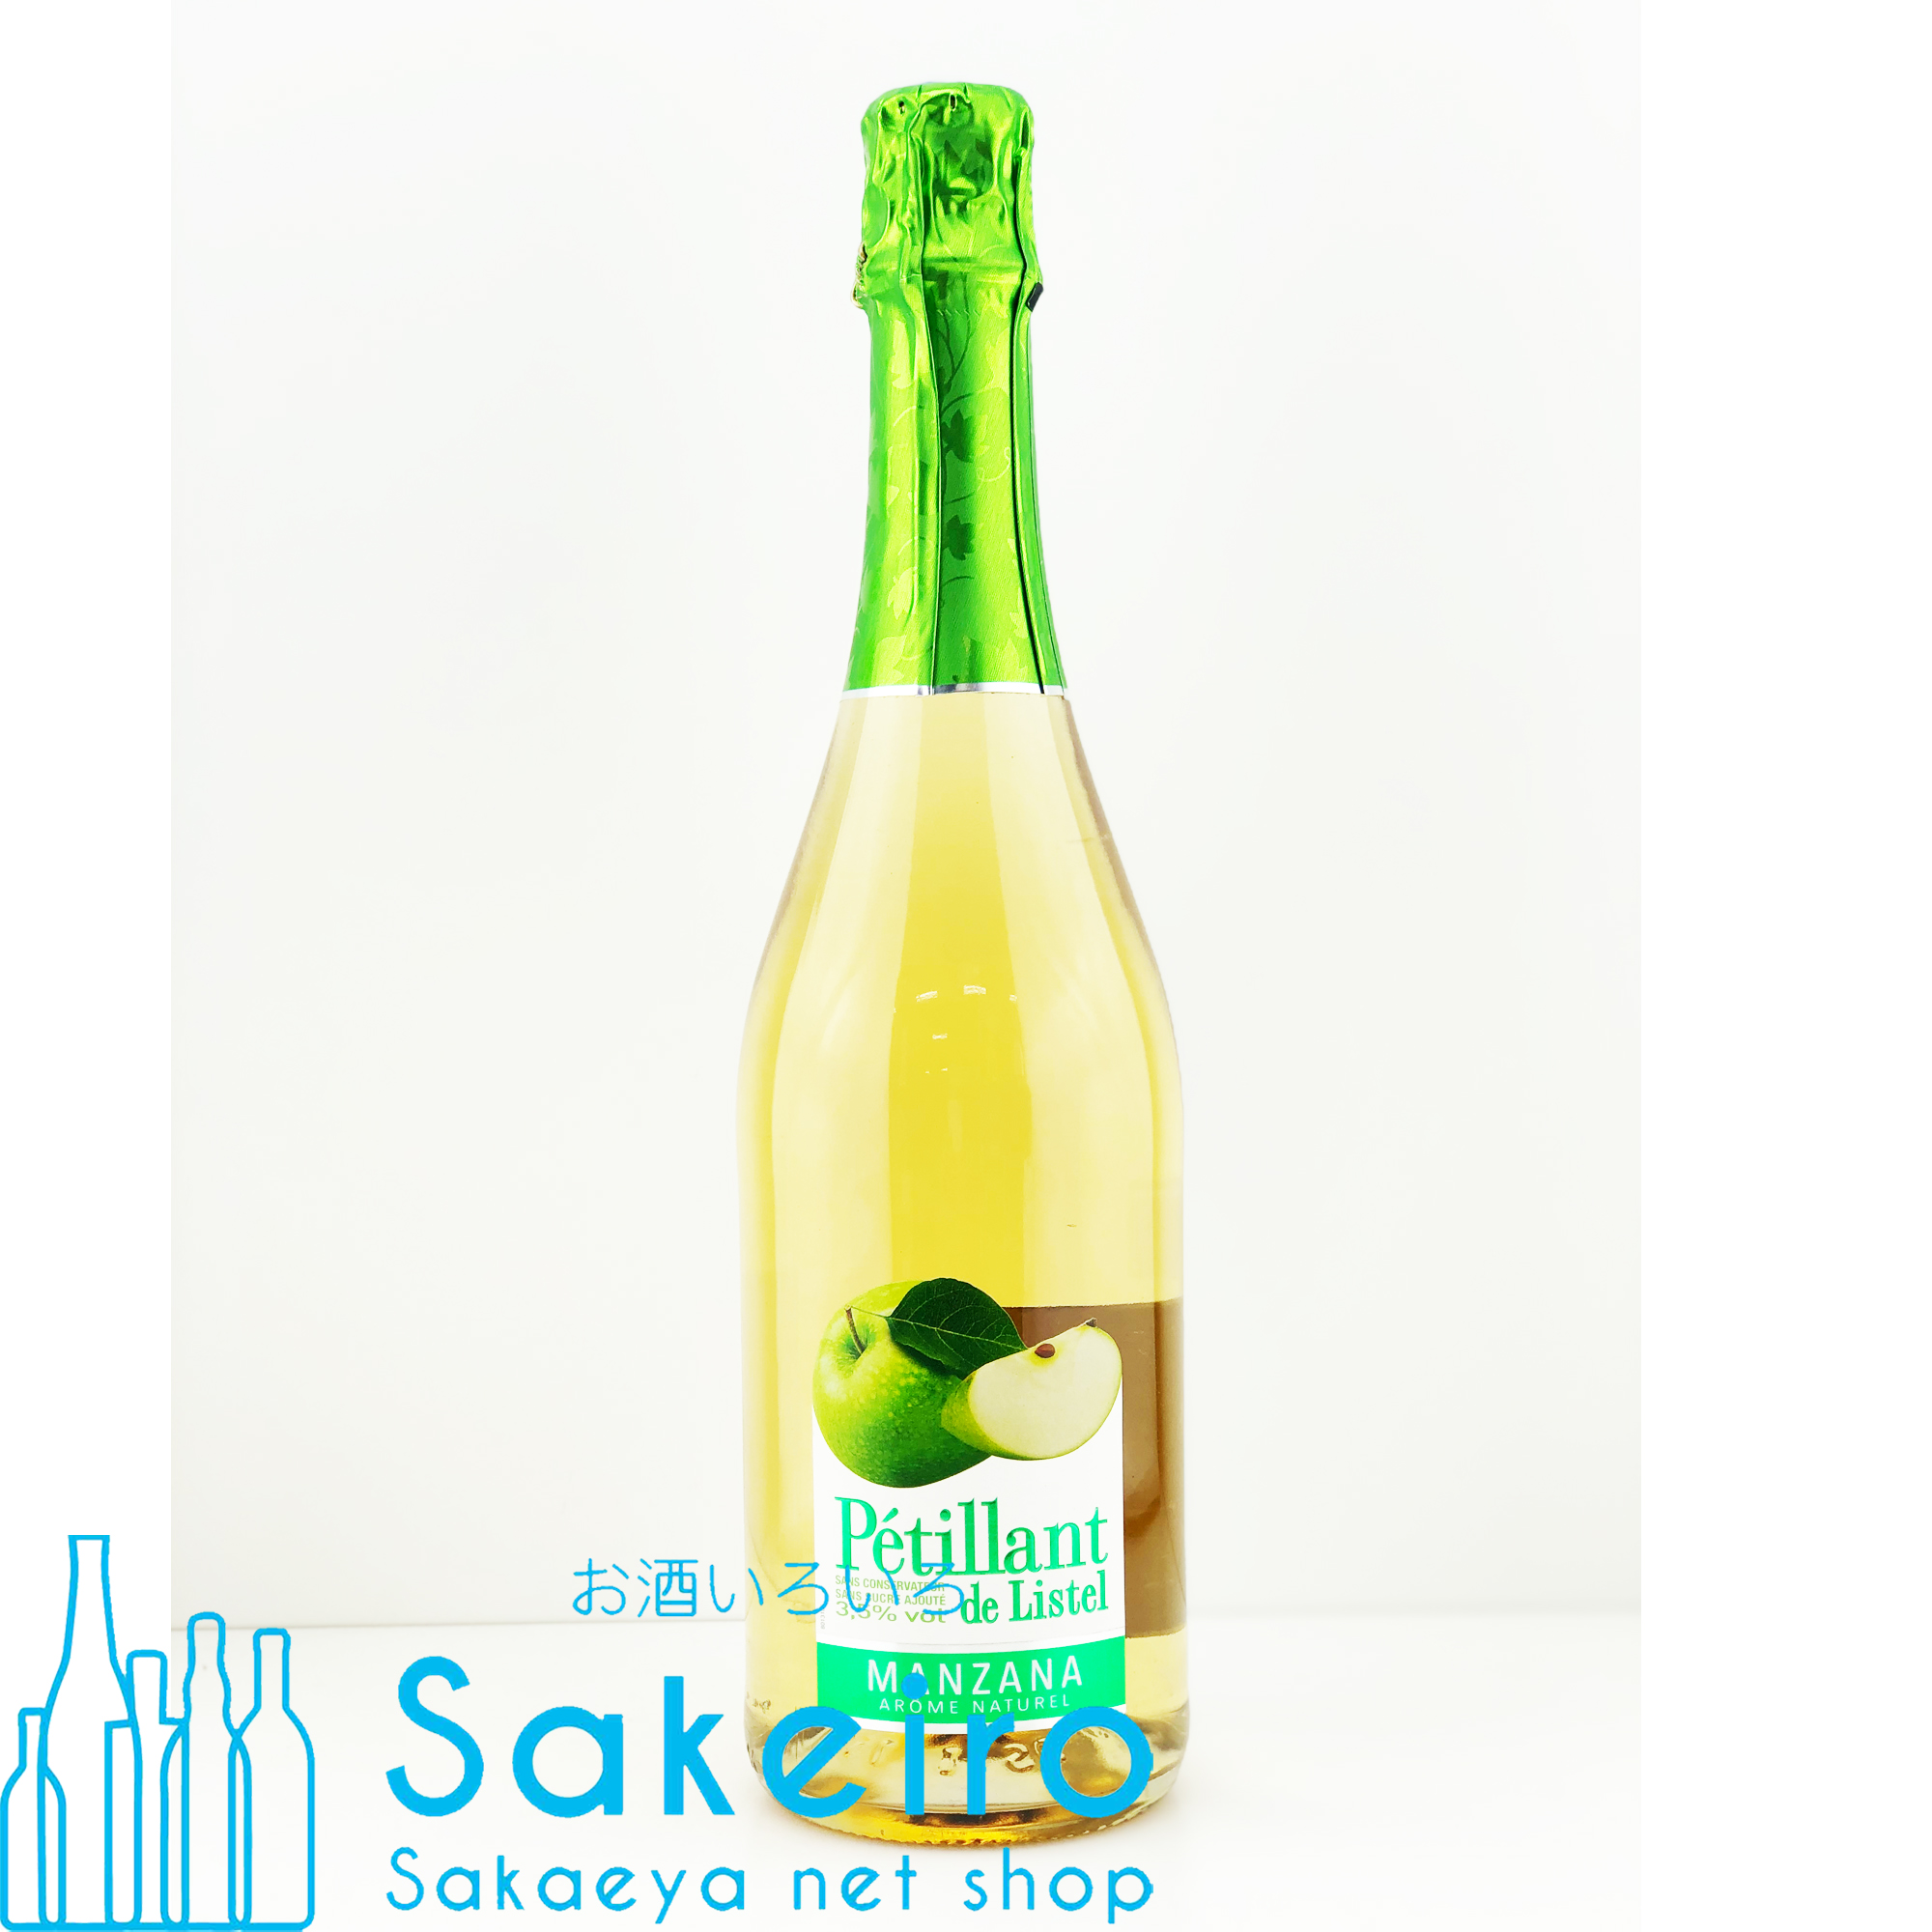 ペティアン・ド・リステル 青りんご 750ml - お酒いろいろ Sakeiro -Sakaeya net shop-